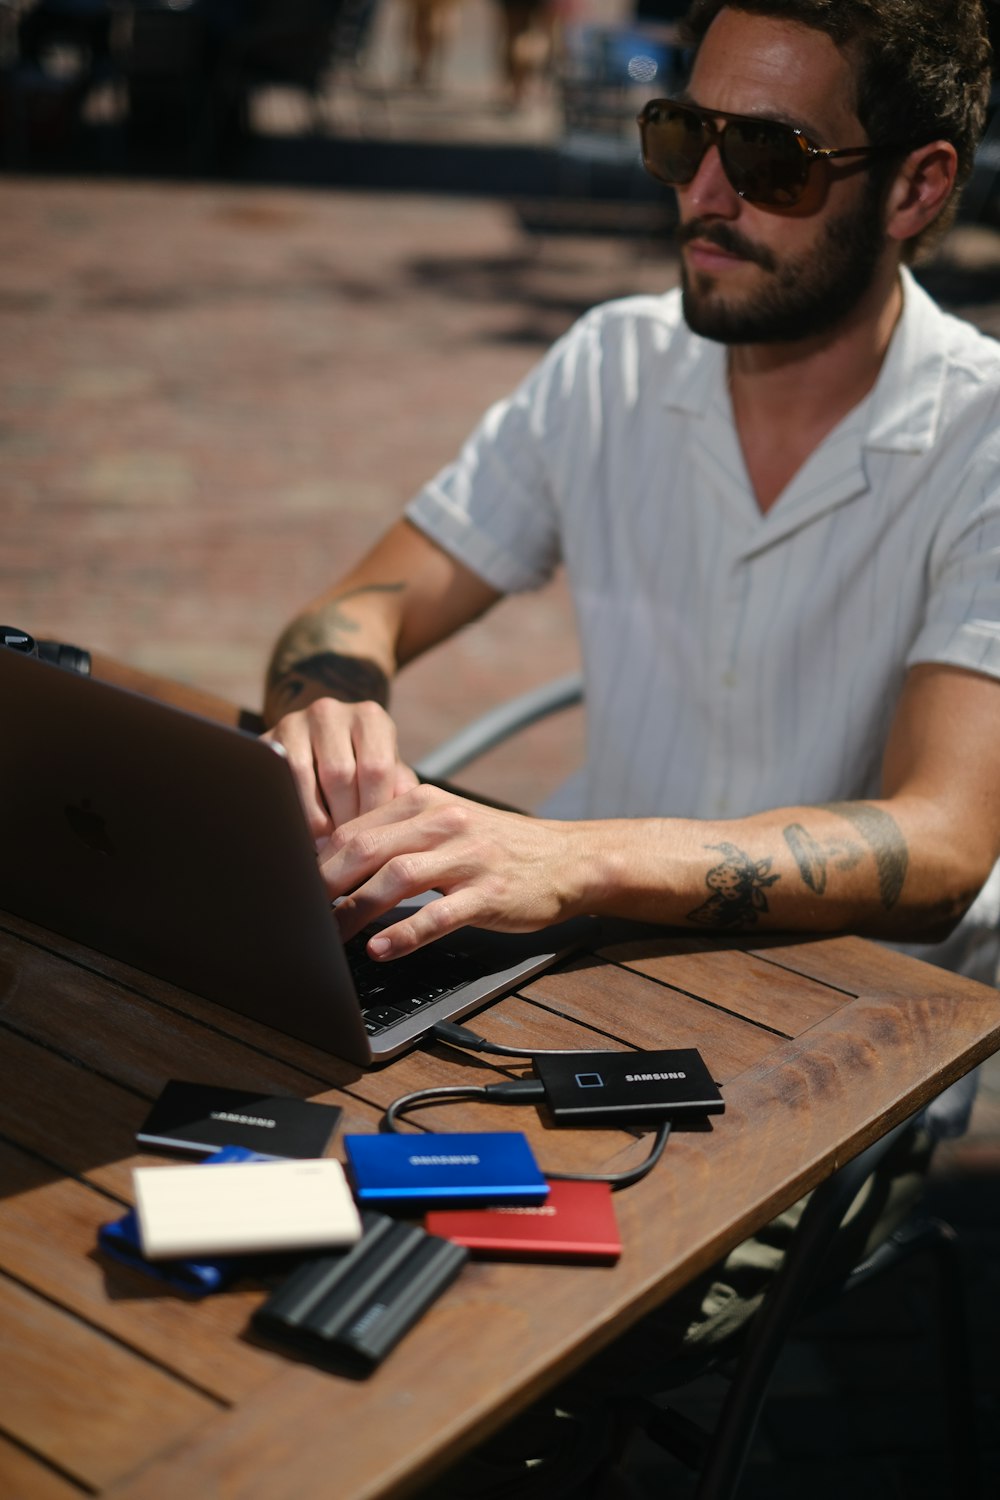 Un hombre sentado en una mesa con una computadora portátil